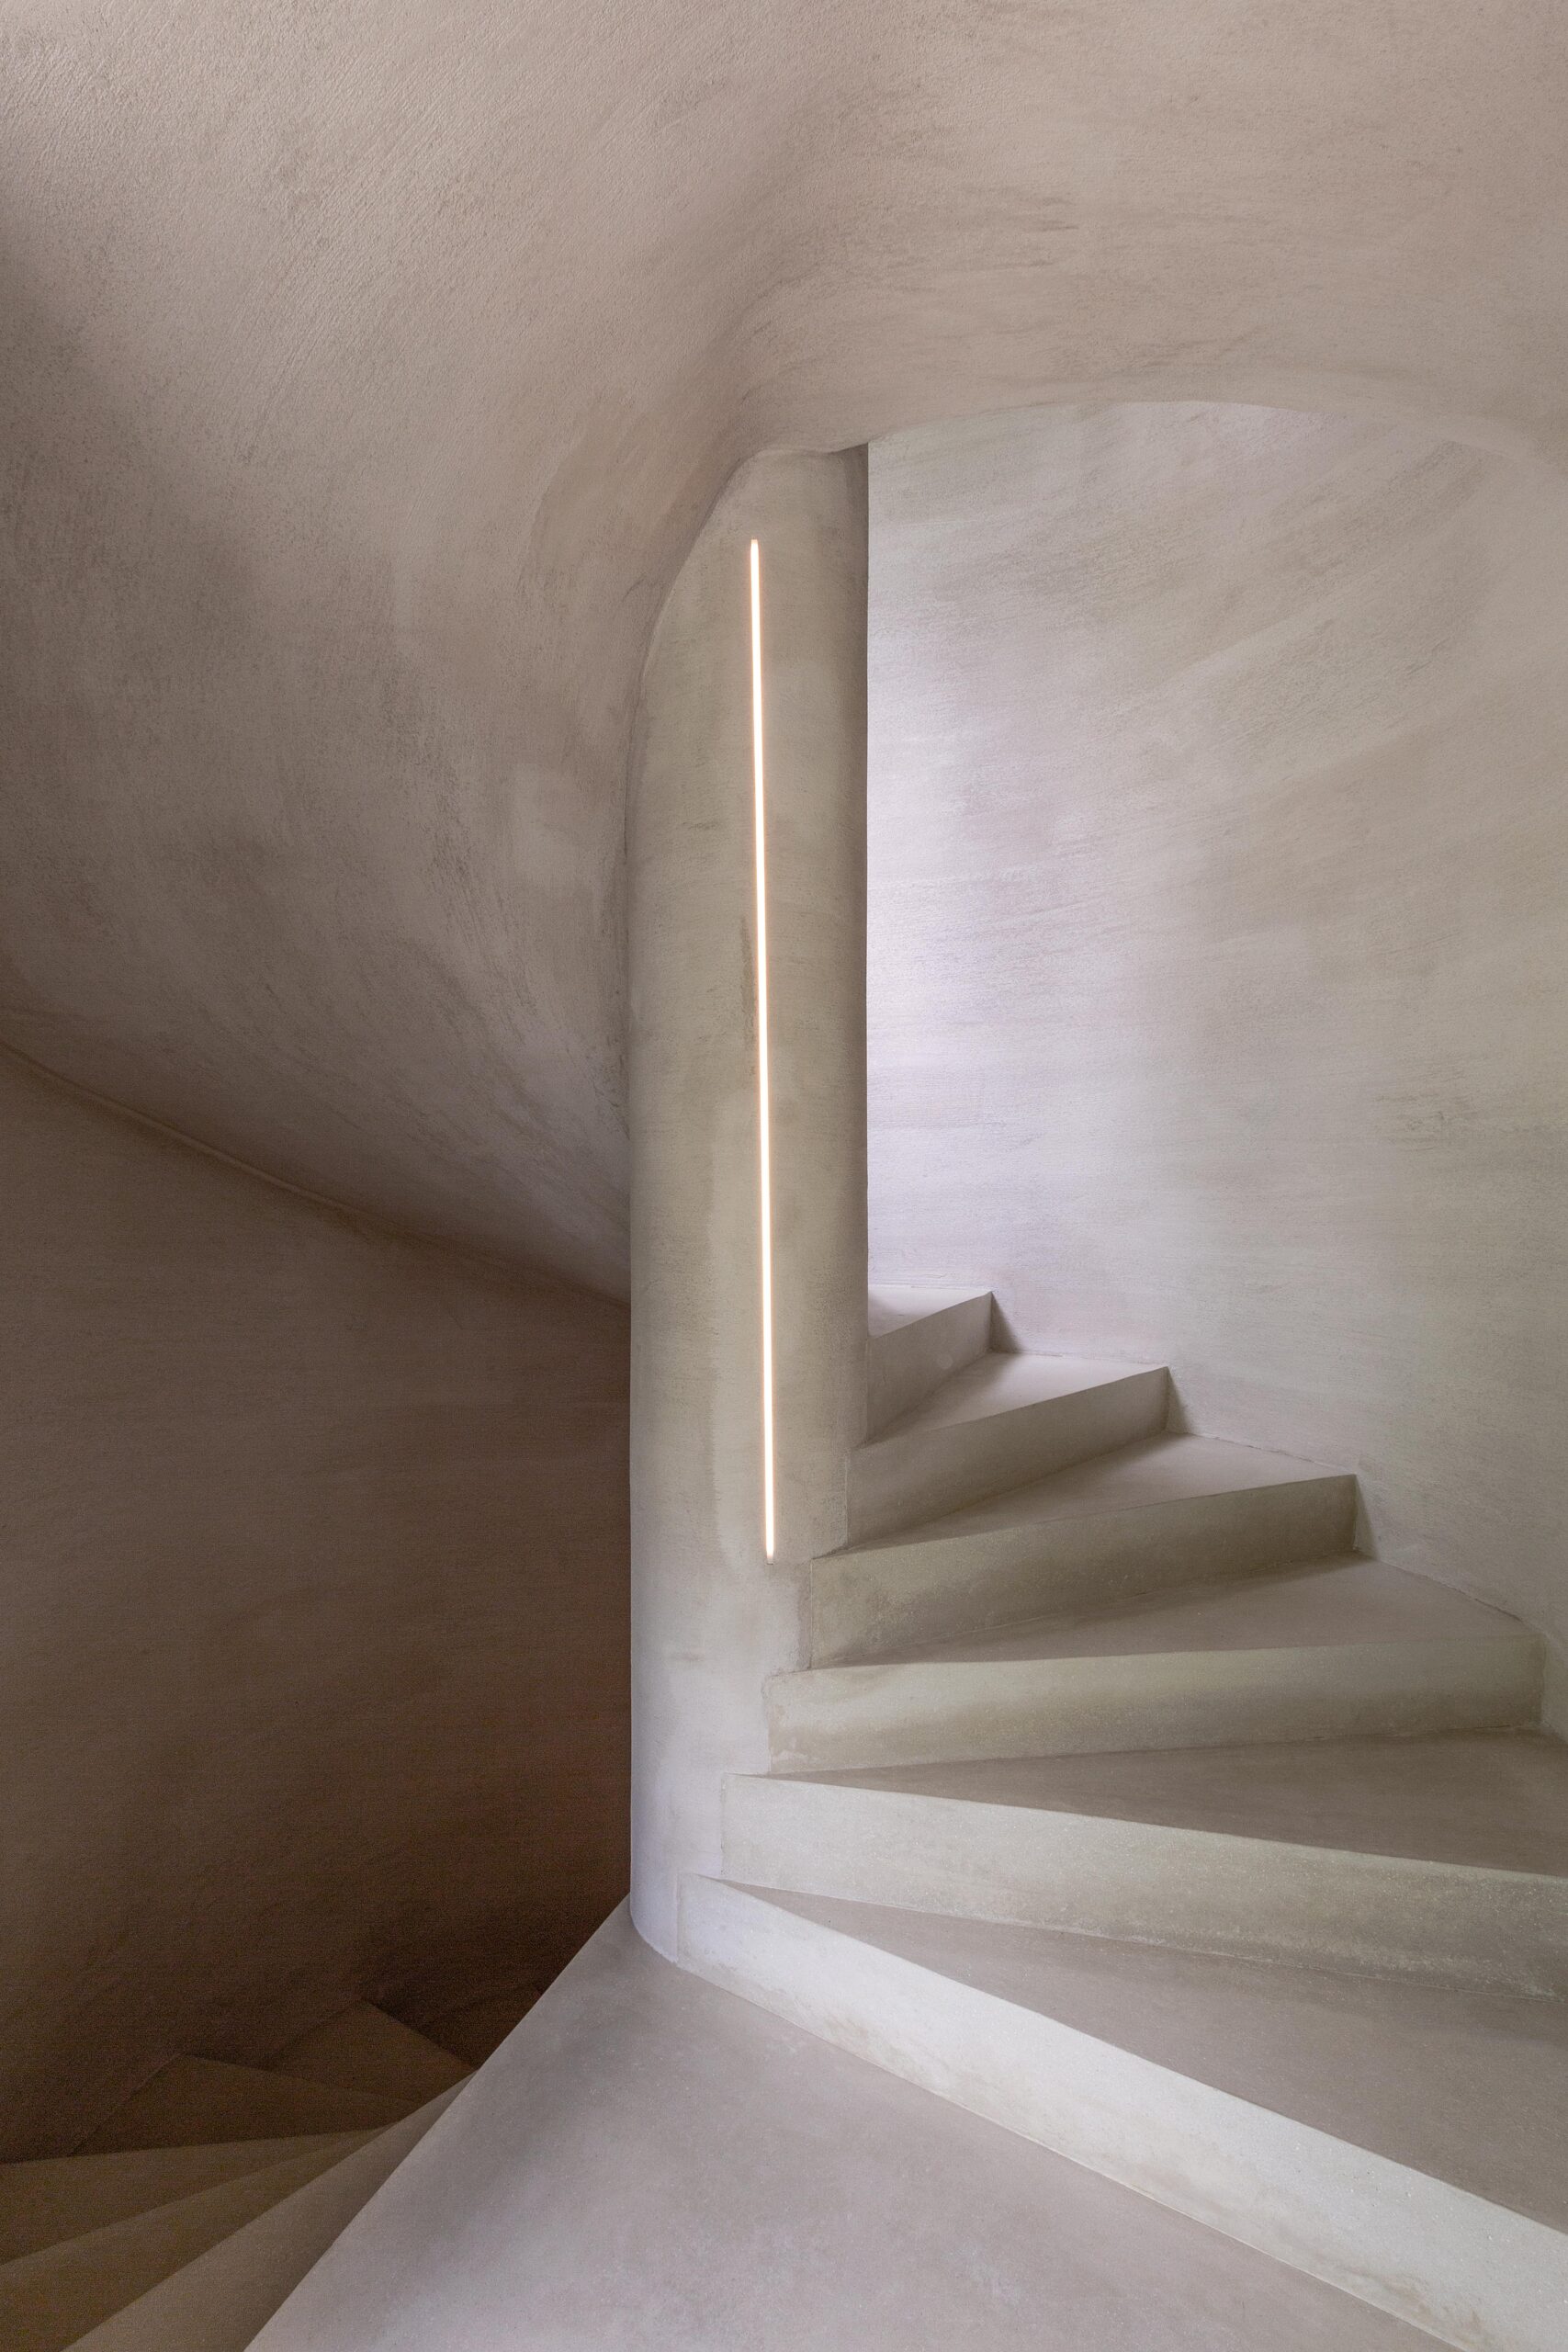 Een minimalistische trap met zachte verlichting en glad gestuukte muren.